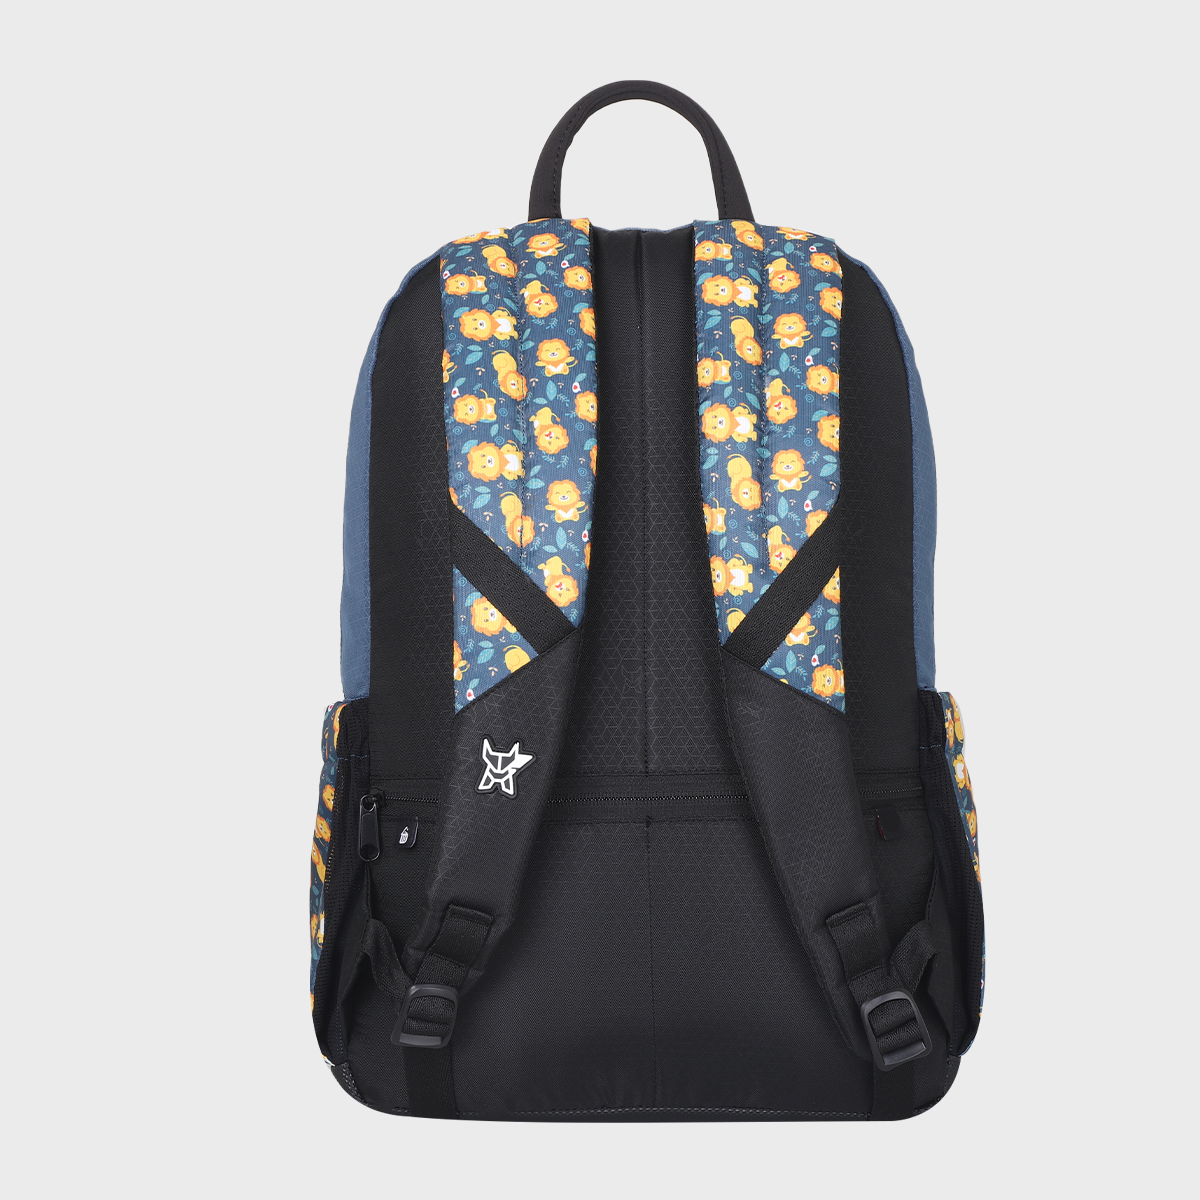 Arctic Fox School Backpack for Boys Lion Club Dark Denim